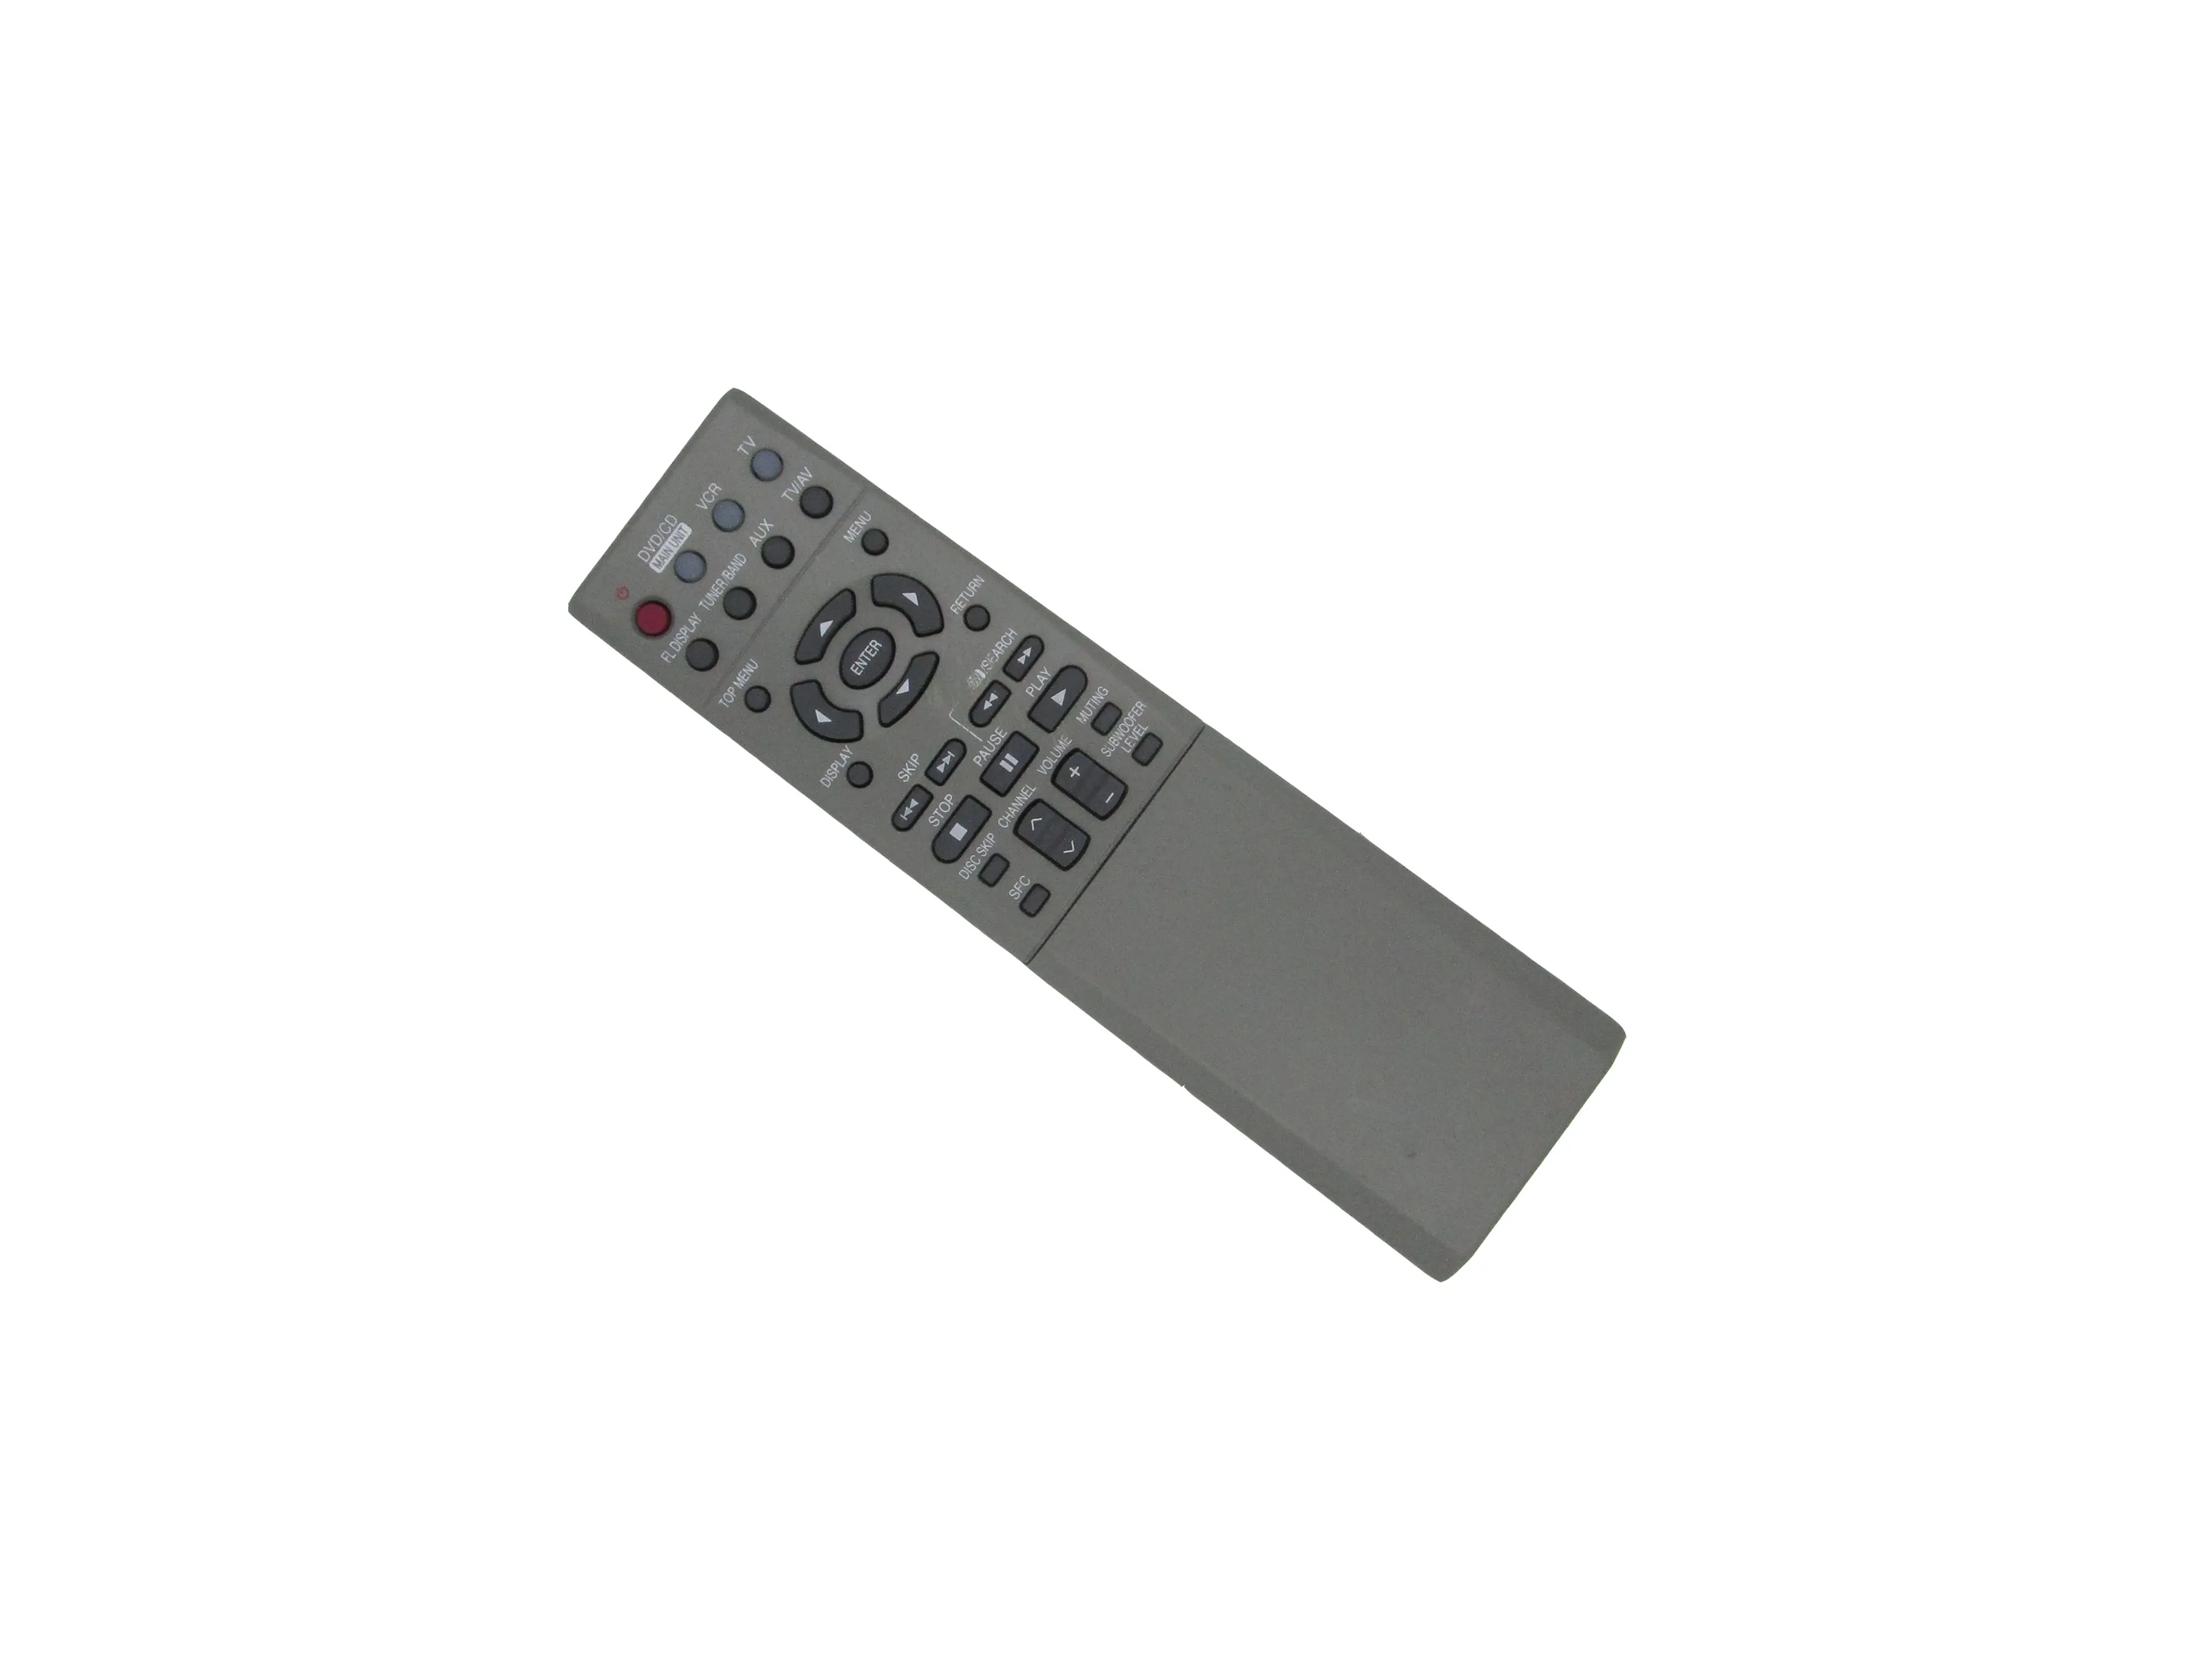 

Пульт дистанционного управления для Panasonic SC-HT720 SC-HT720P EUR7722X50 SA-HT920P SC-HT920PC DVD звуковая система для домашнего кинотеатра